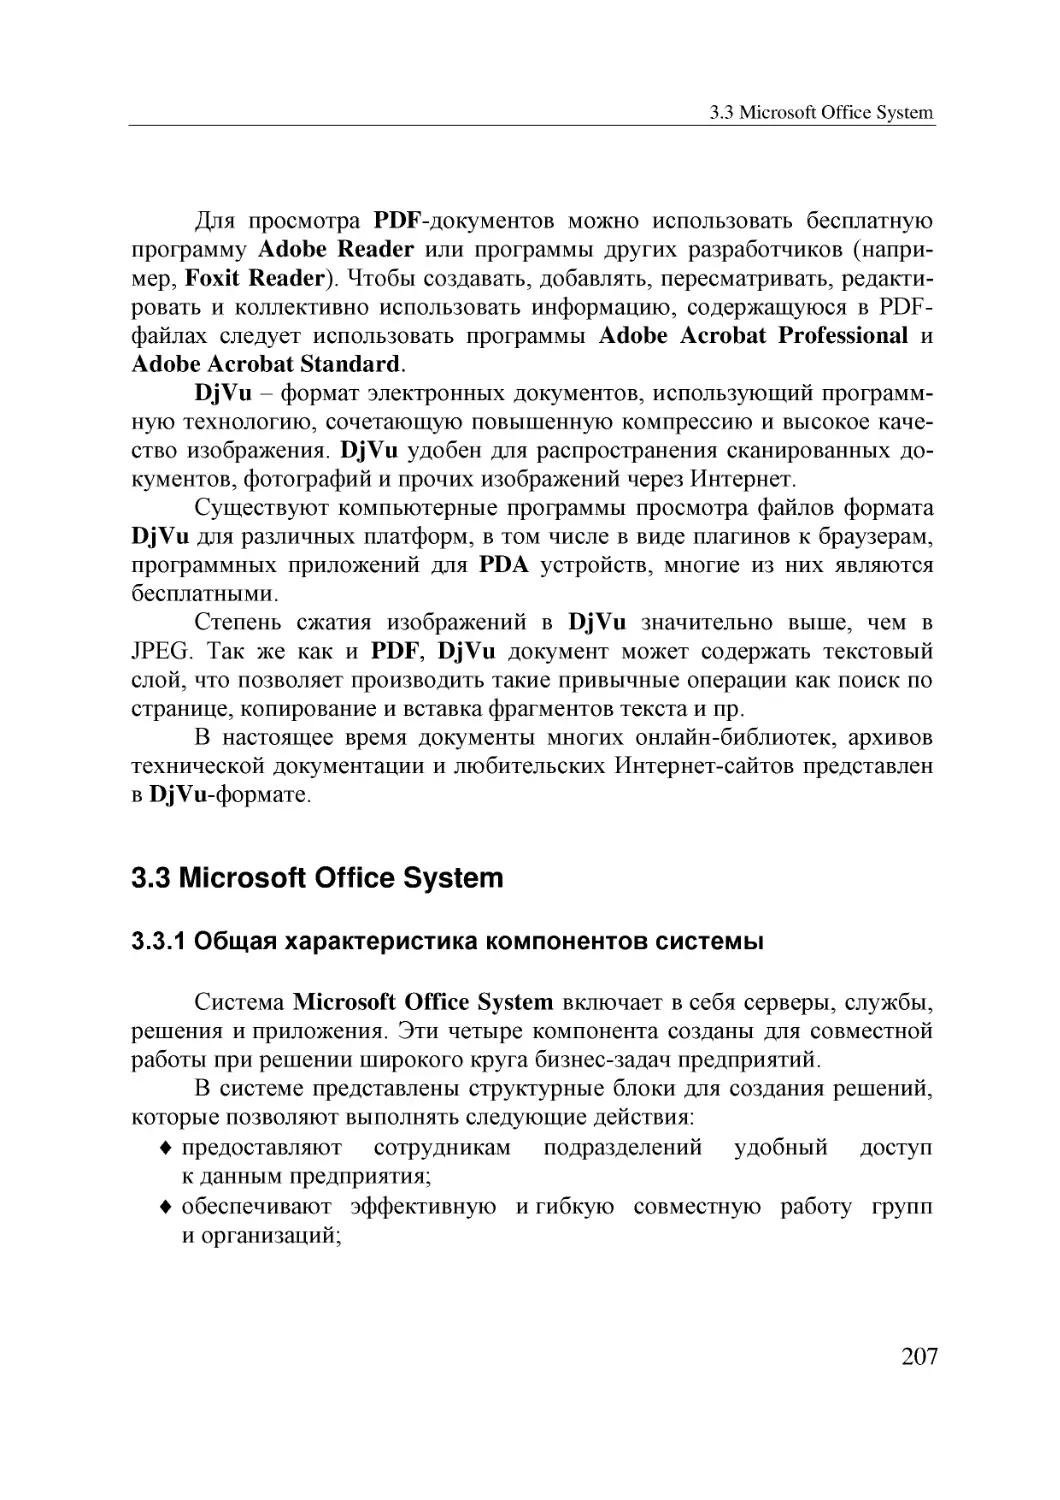 Informatika_Uchebnik_dlya_vuzov_2010 207